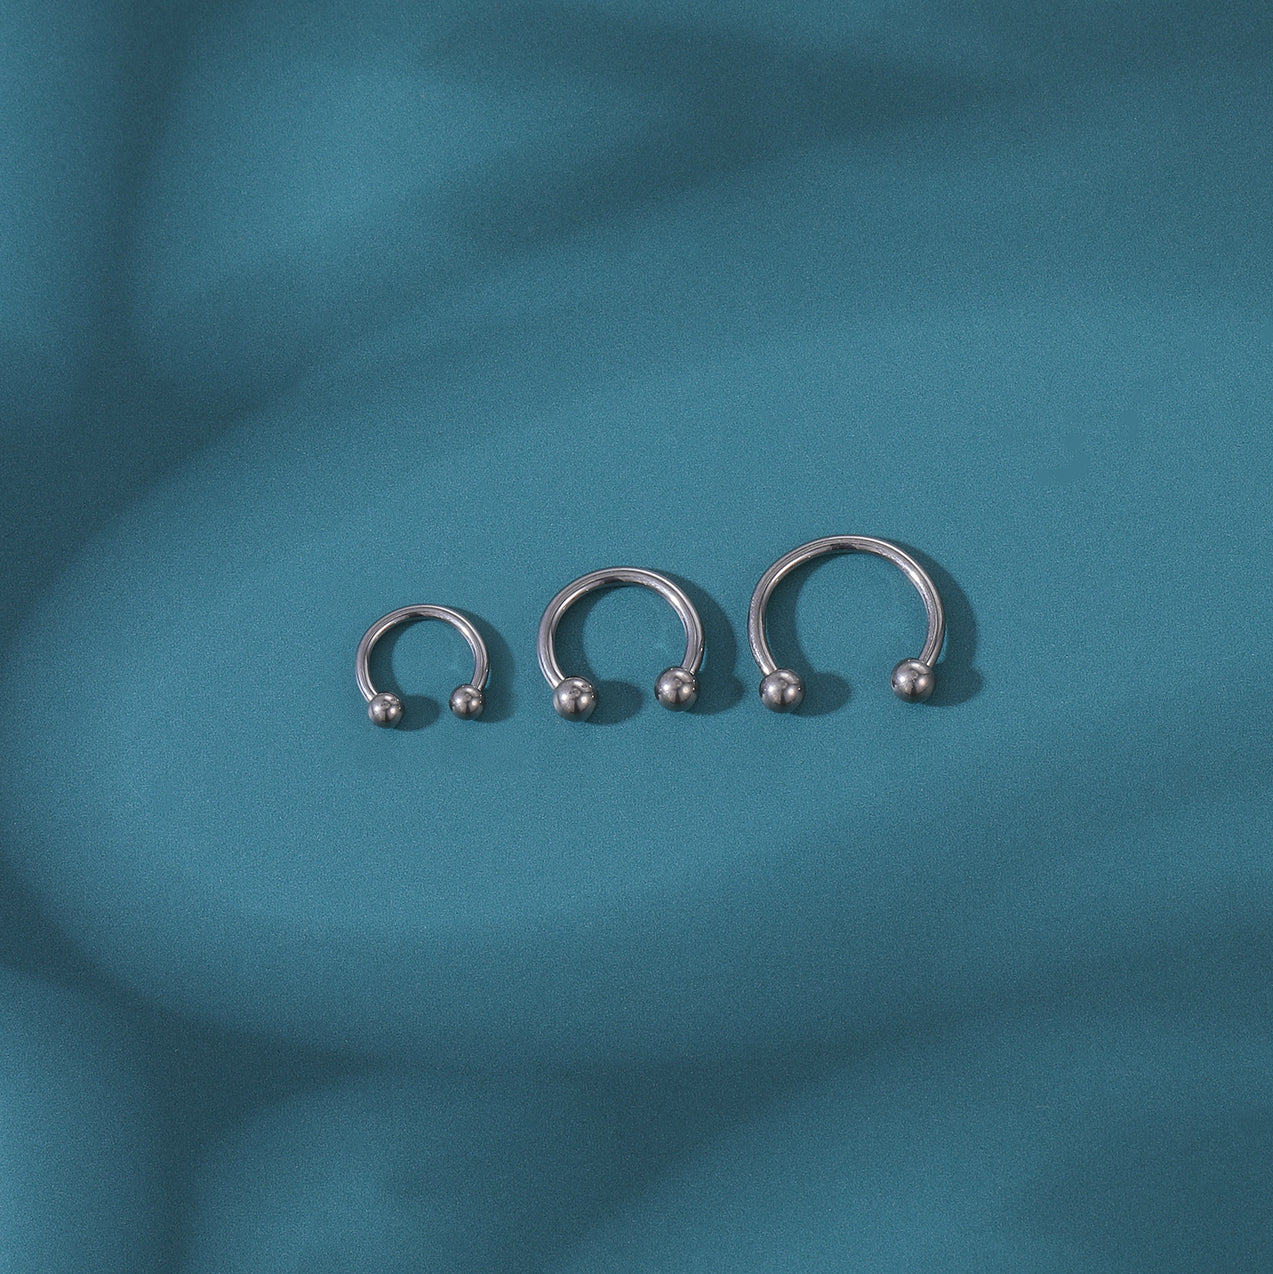 16g-g23-titanium-nose-septum-ring-horse-shoe-conch-helix-cartilage-piercing